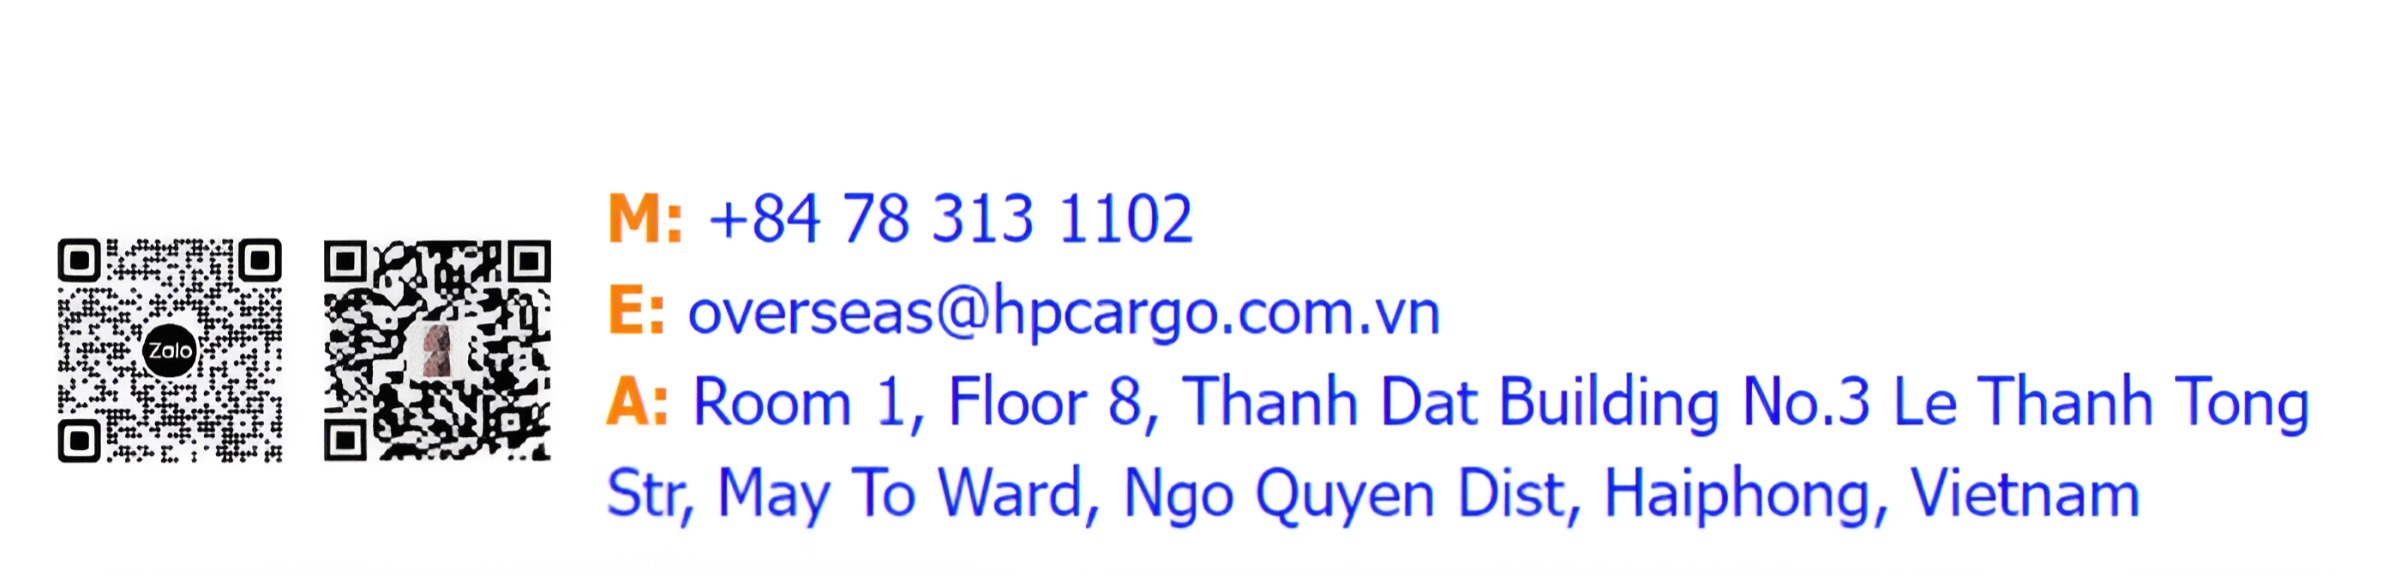 Công ty TNHH HP Cargo